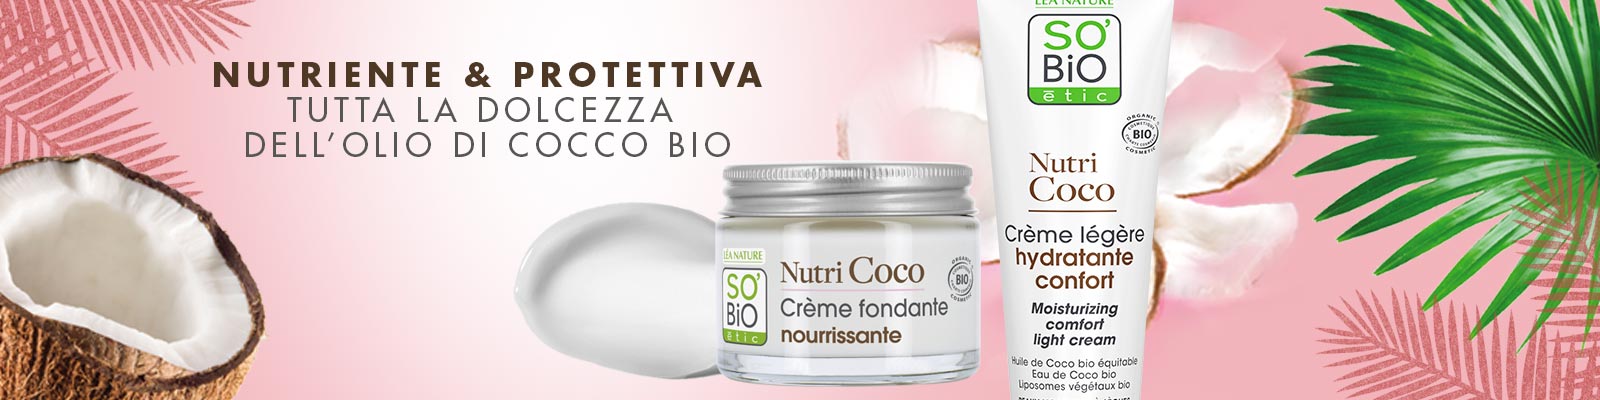 Nutri Coco - So'Bio étic